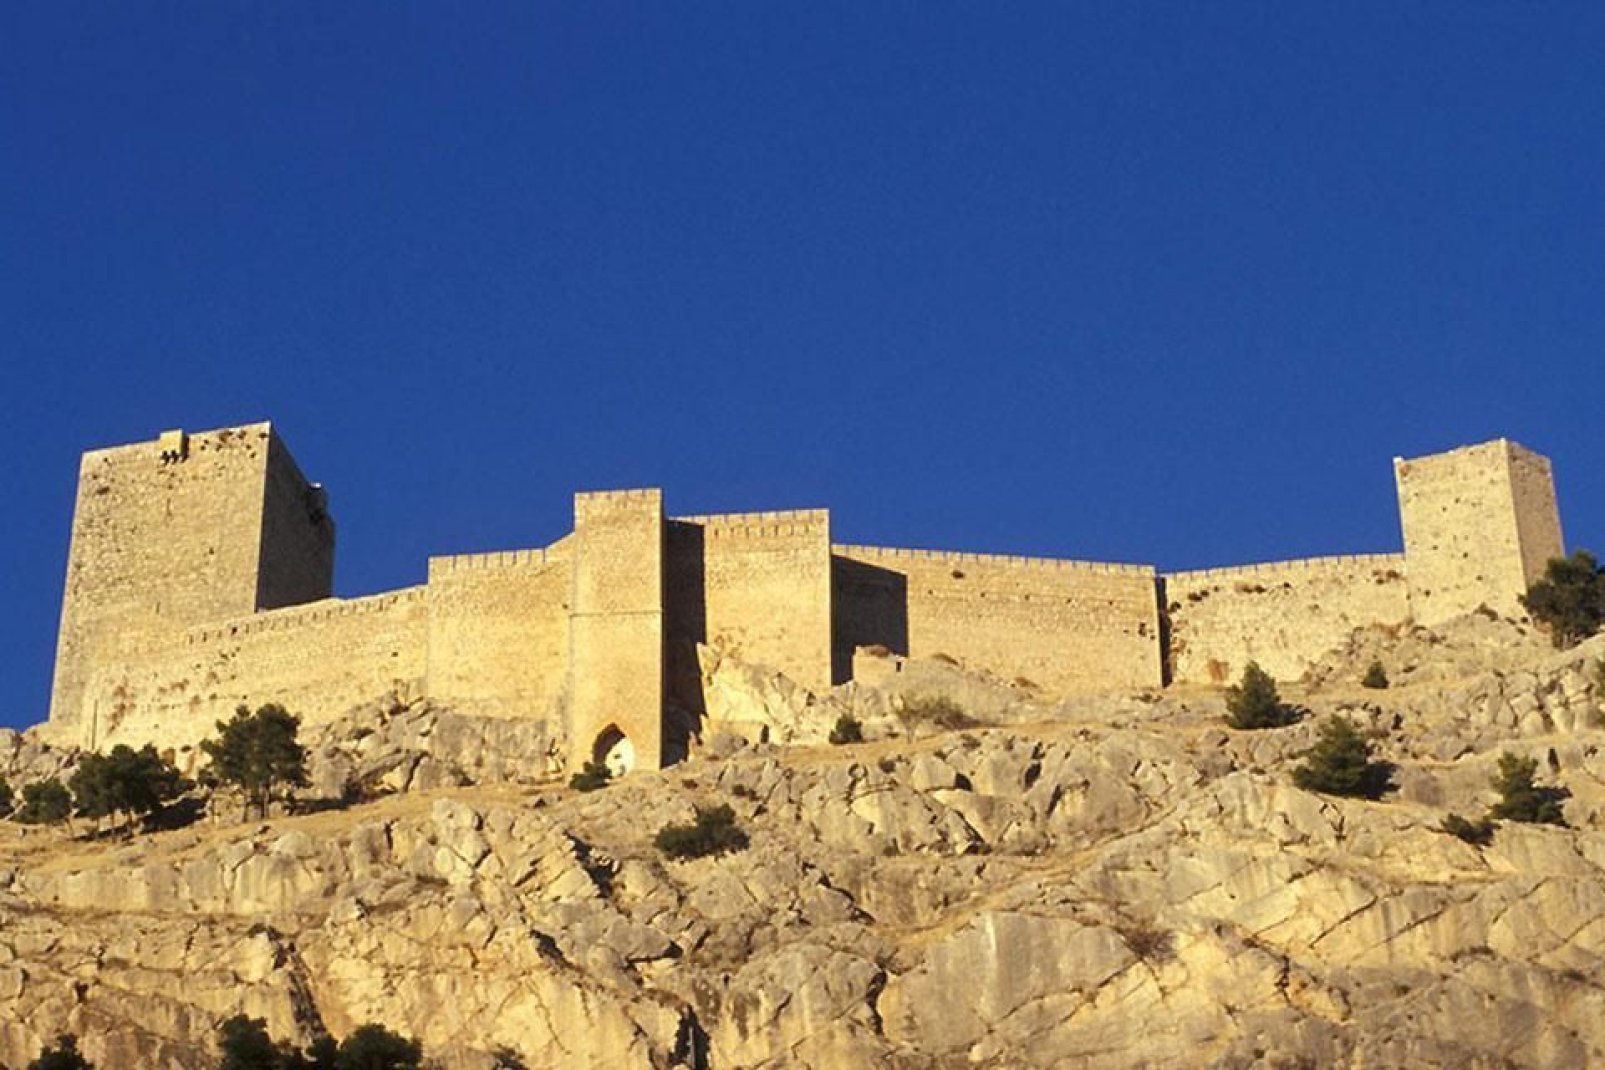 Este castillo gótico domina la ciudad de Jaén Ambos están comunicados por un paso. Desde allí arriba, tienes unas vistas impresionantes sobre Jaén y las montañas de los alrededores.